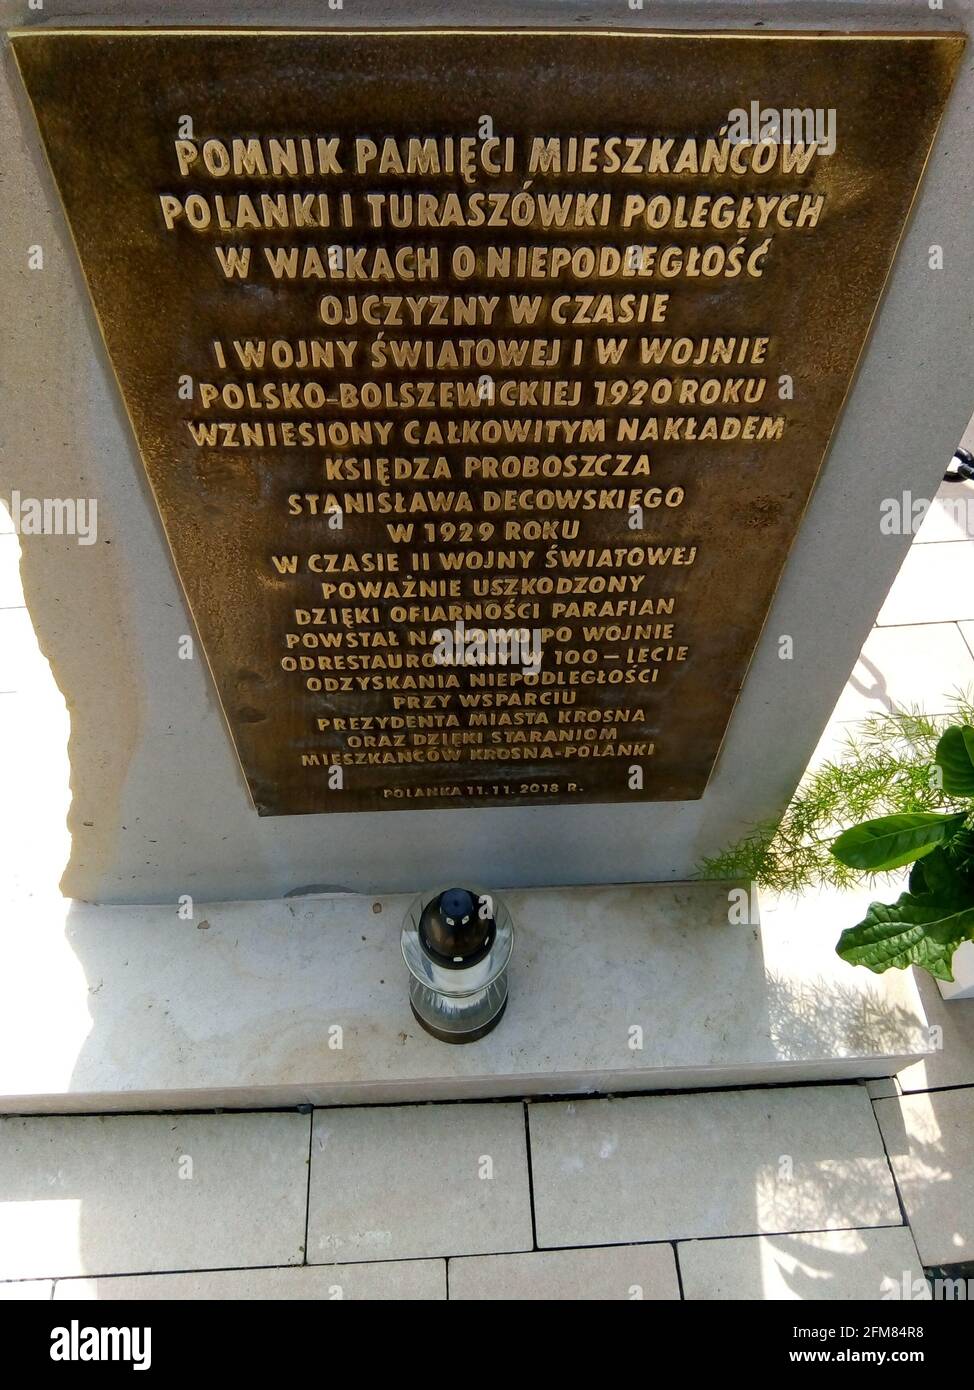 Pomnik pamieci mieszkancow Polanki i Turaszowki poleglych W walkach o Niepogleglosc ojczyzny W czasie i wojny swatawej i W wojnie polsko-bolszewickie Banque D'Images